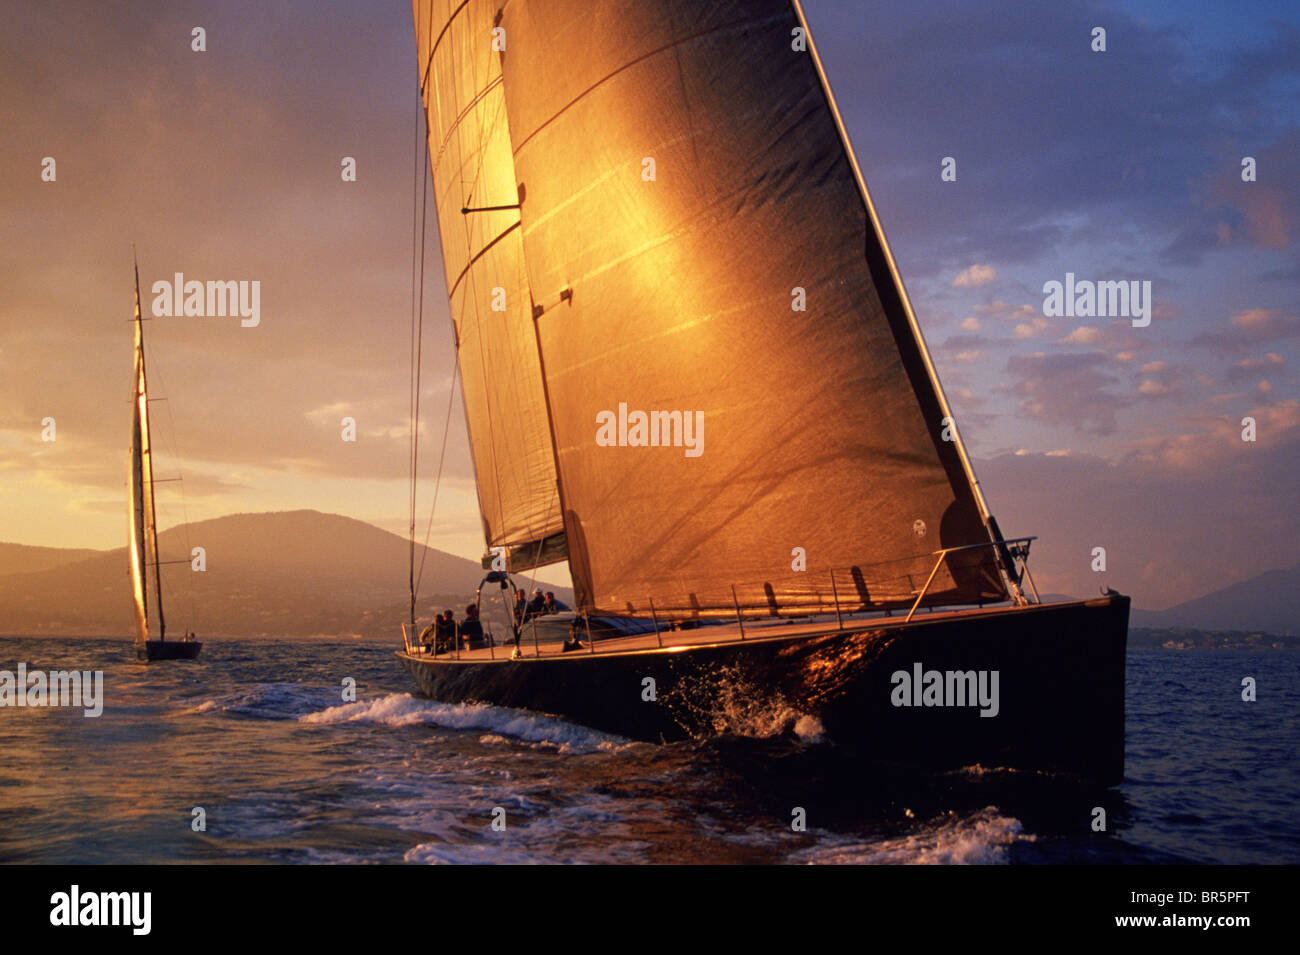 Sailboat racing at sunset. Stock Photo